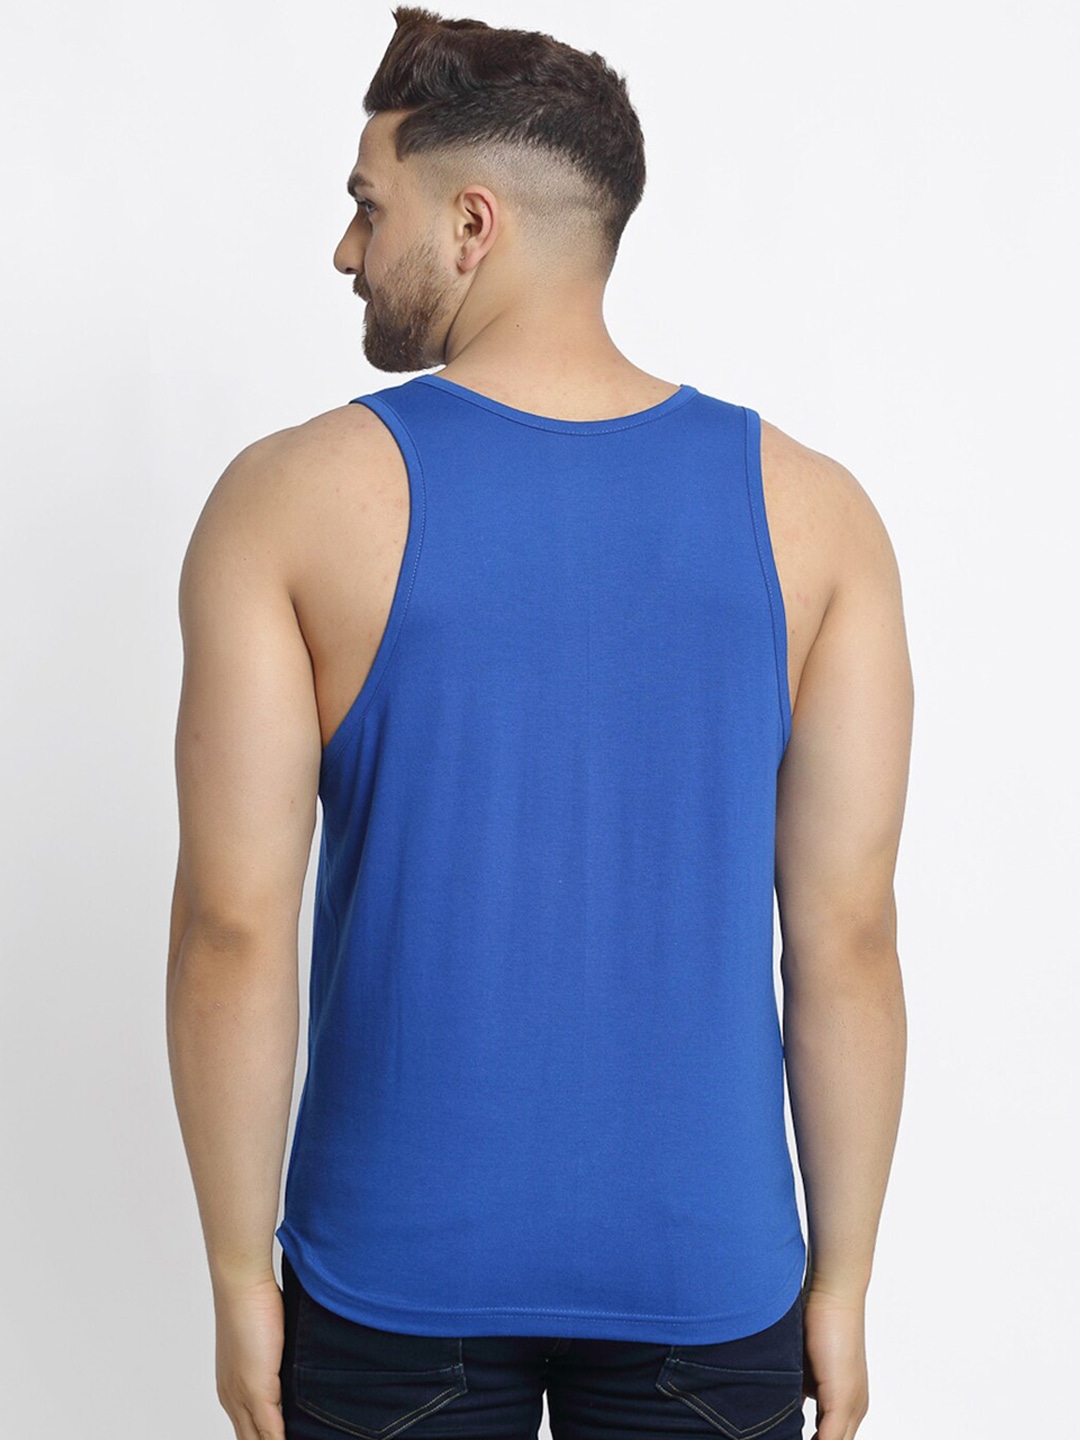 Clothing Innerwear Vests | Friskers Men Pack Of 2 Printed Cotton Innerwear Vest - OL60052